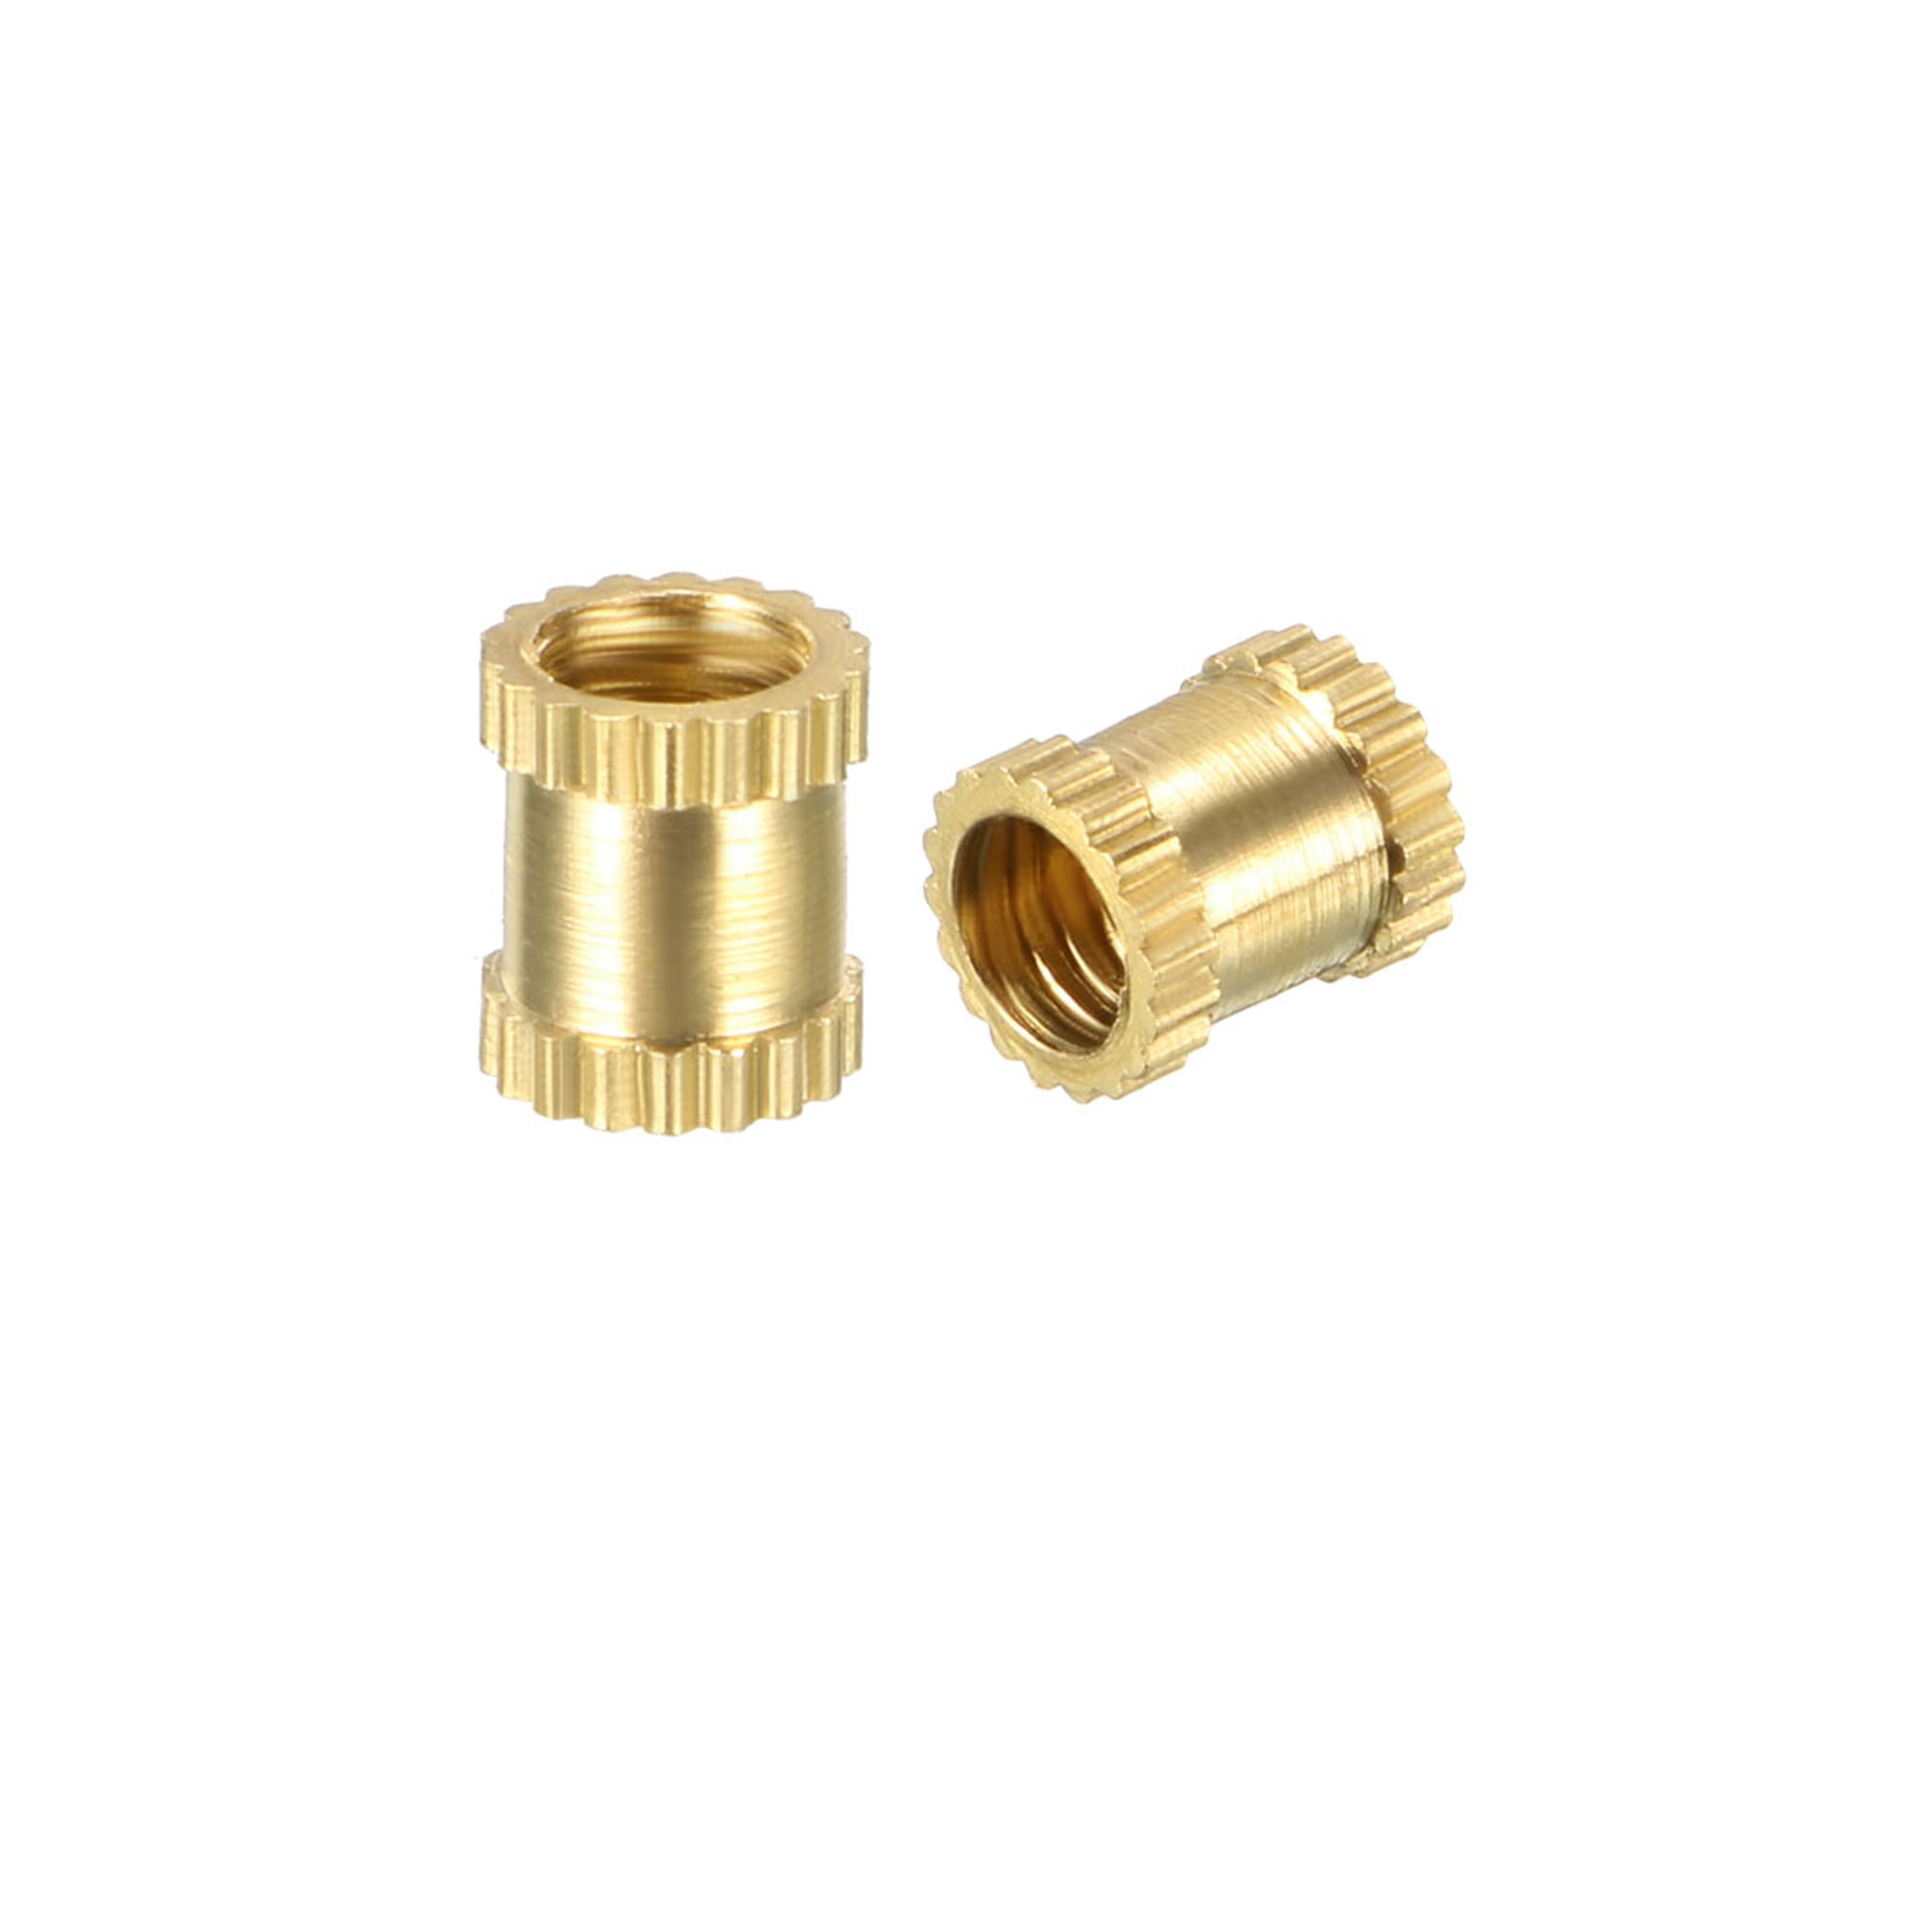 Metric Threaded Brass Knurl Round Insert Nuts -5mm L OD 100Pcs M3x5mm 